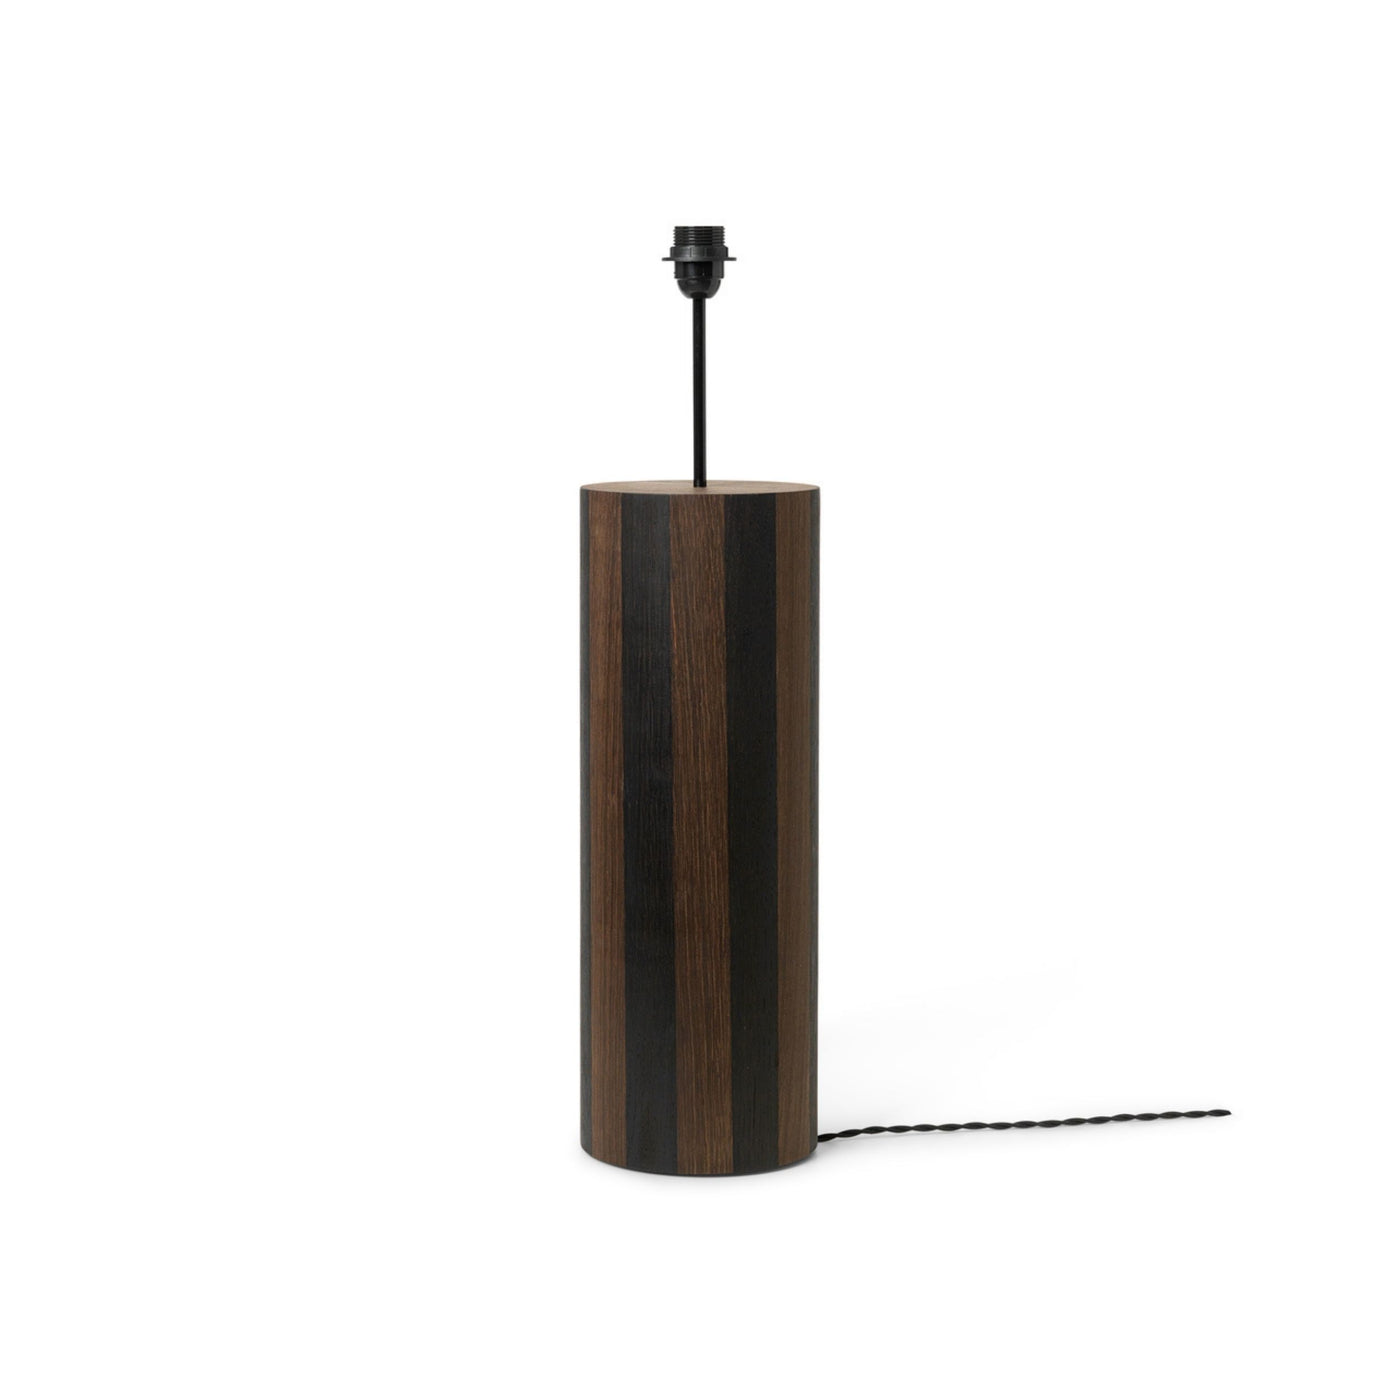 Ferm Living Post Floor Lamp Base. Shop online at someday designs. #design_lines 